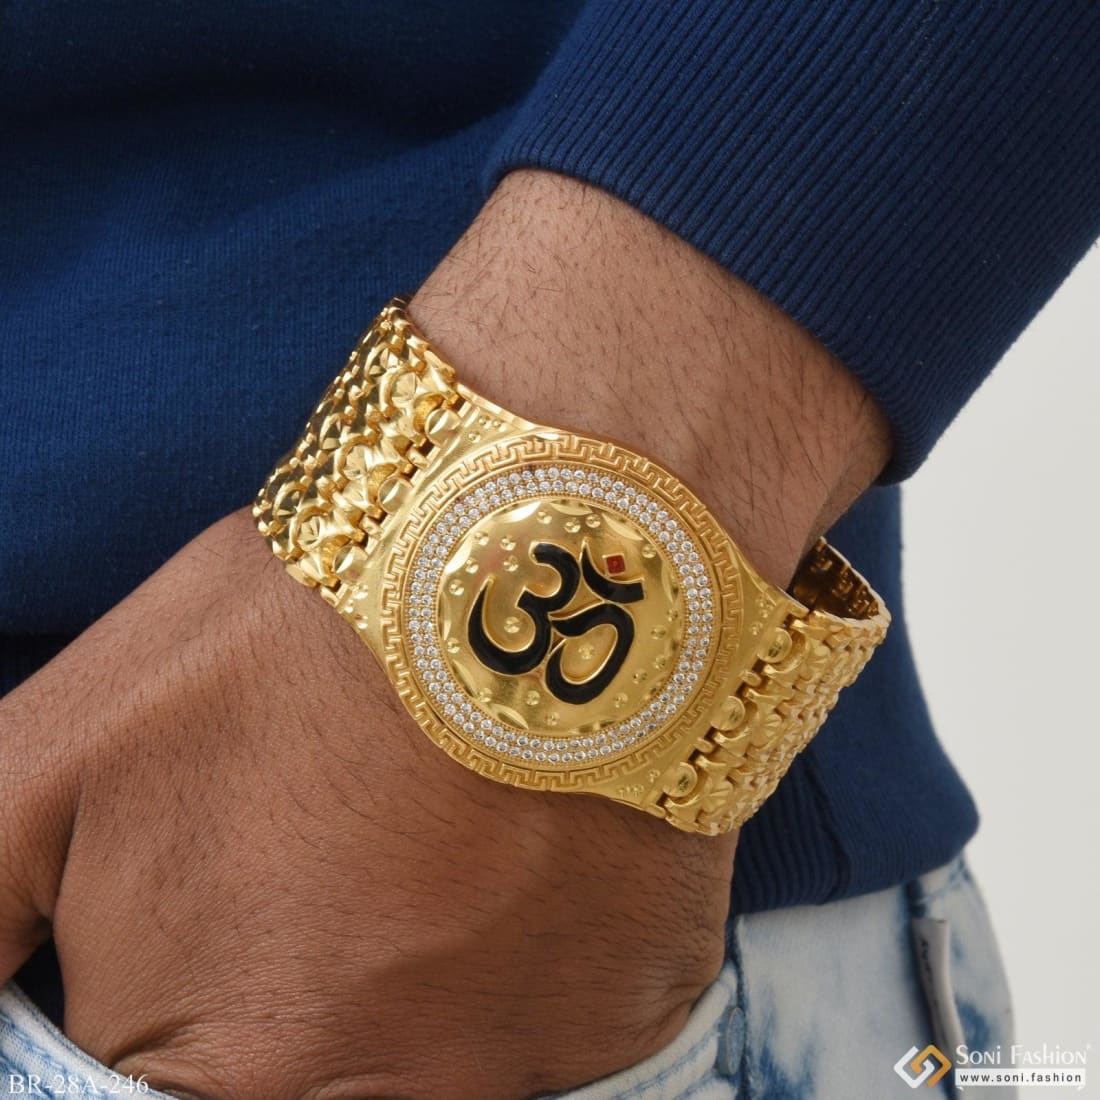 Buy Men's Om Bracelet in Gold Online in India at Best Price - Jewelslane